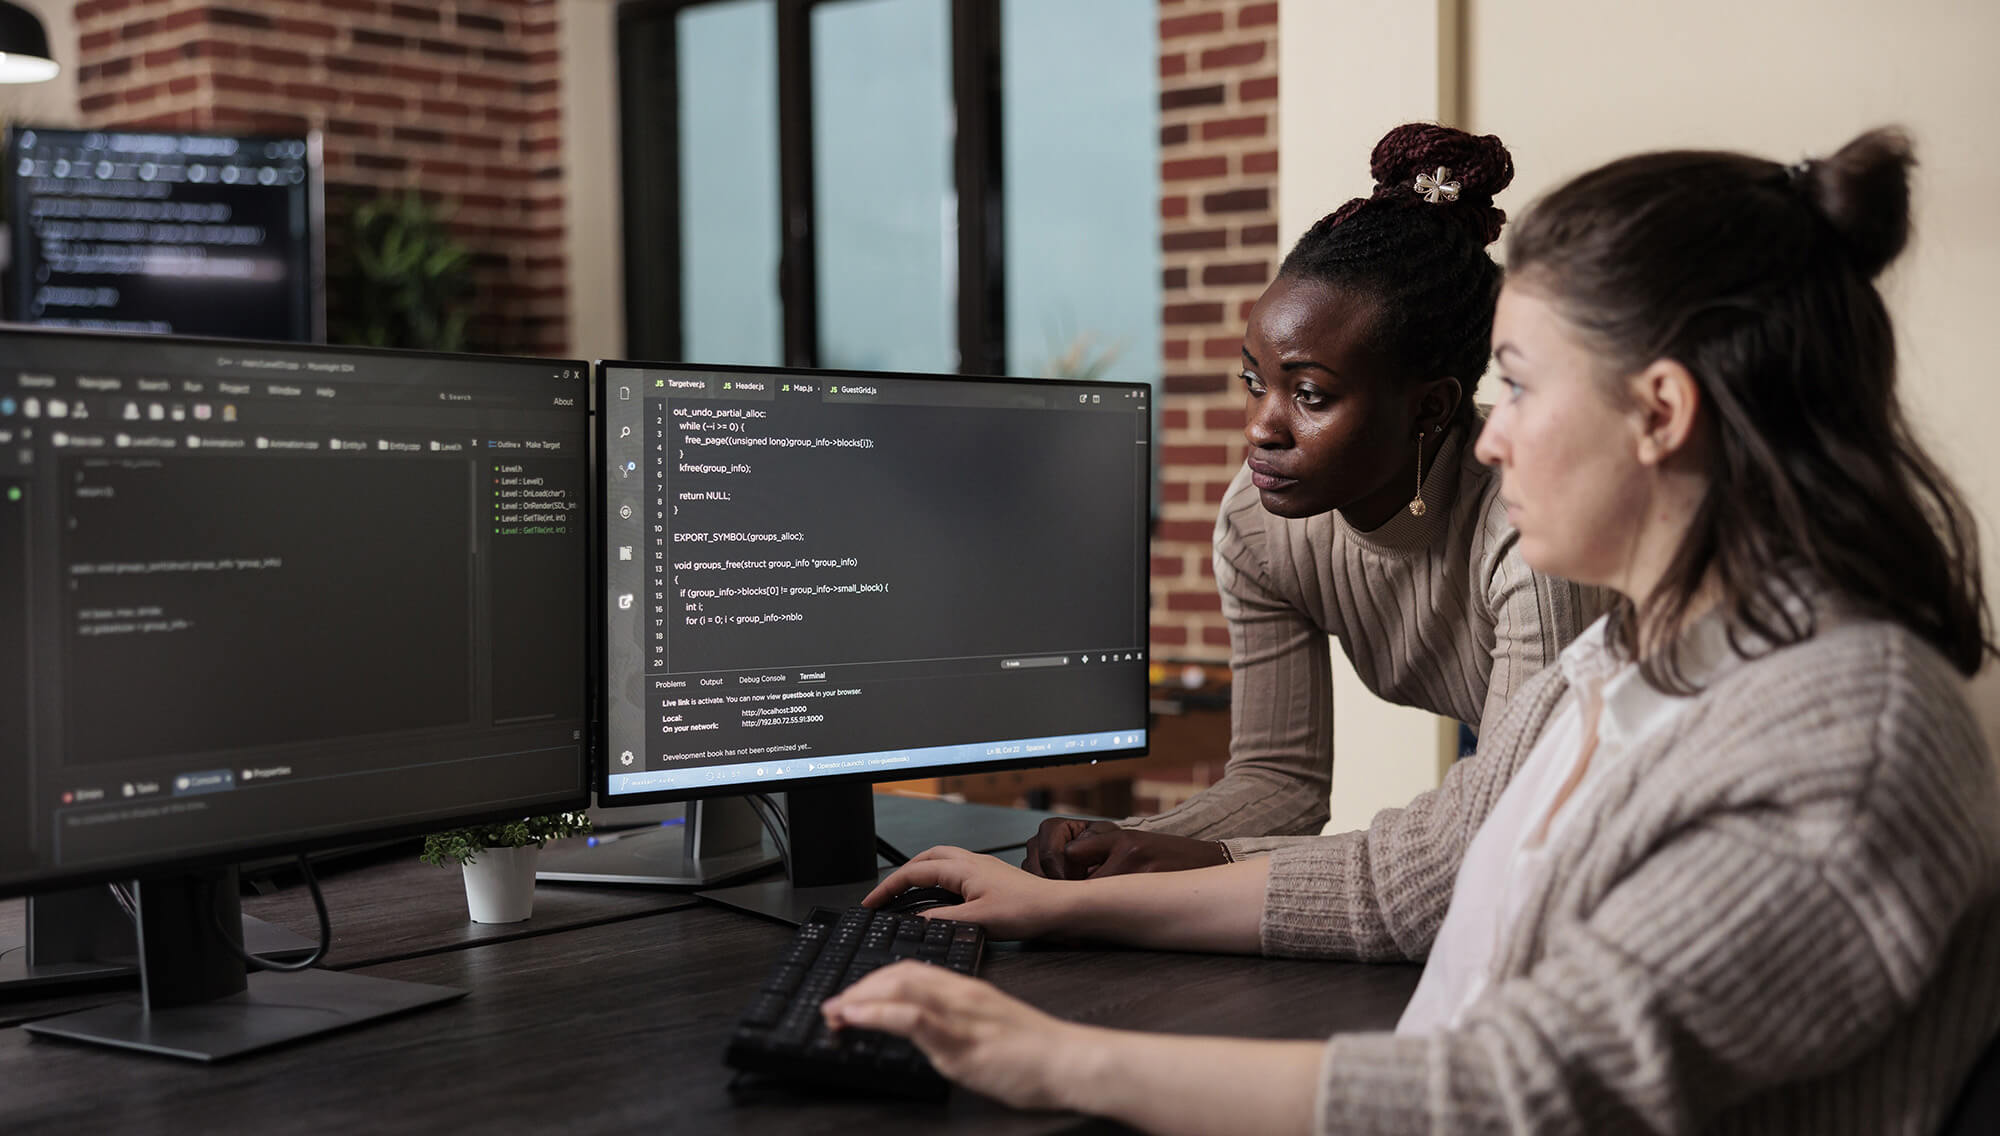 Sur la photo on voit deux femmes qui regarde des écrans d'ordinateur où se trouvent des lignes de code. Développeur web est un métier qui recrute.